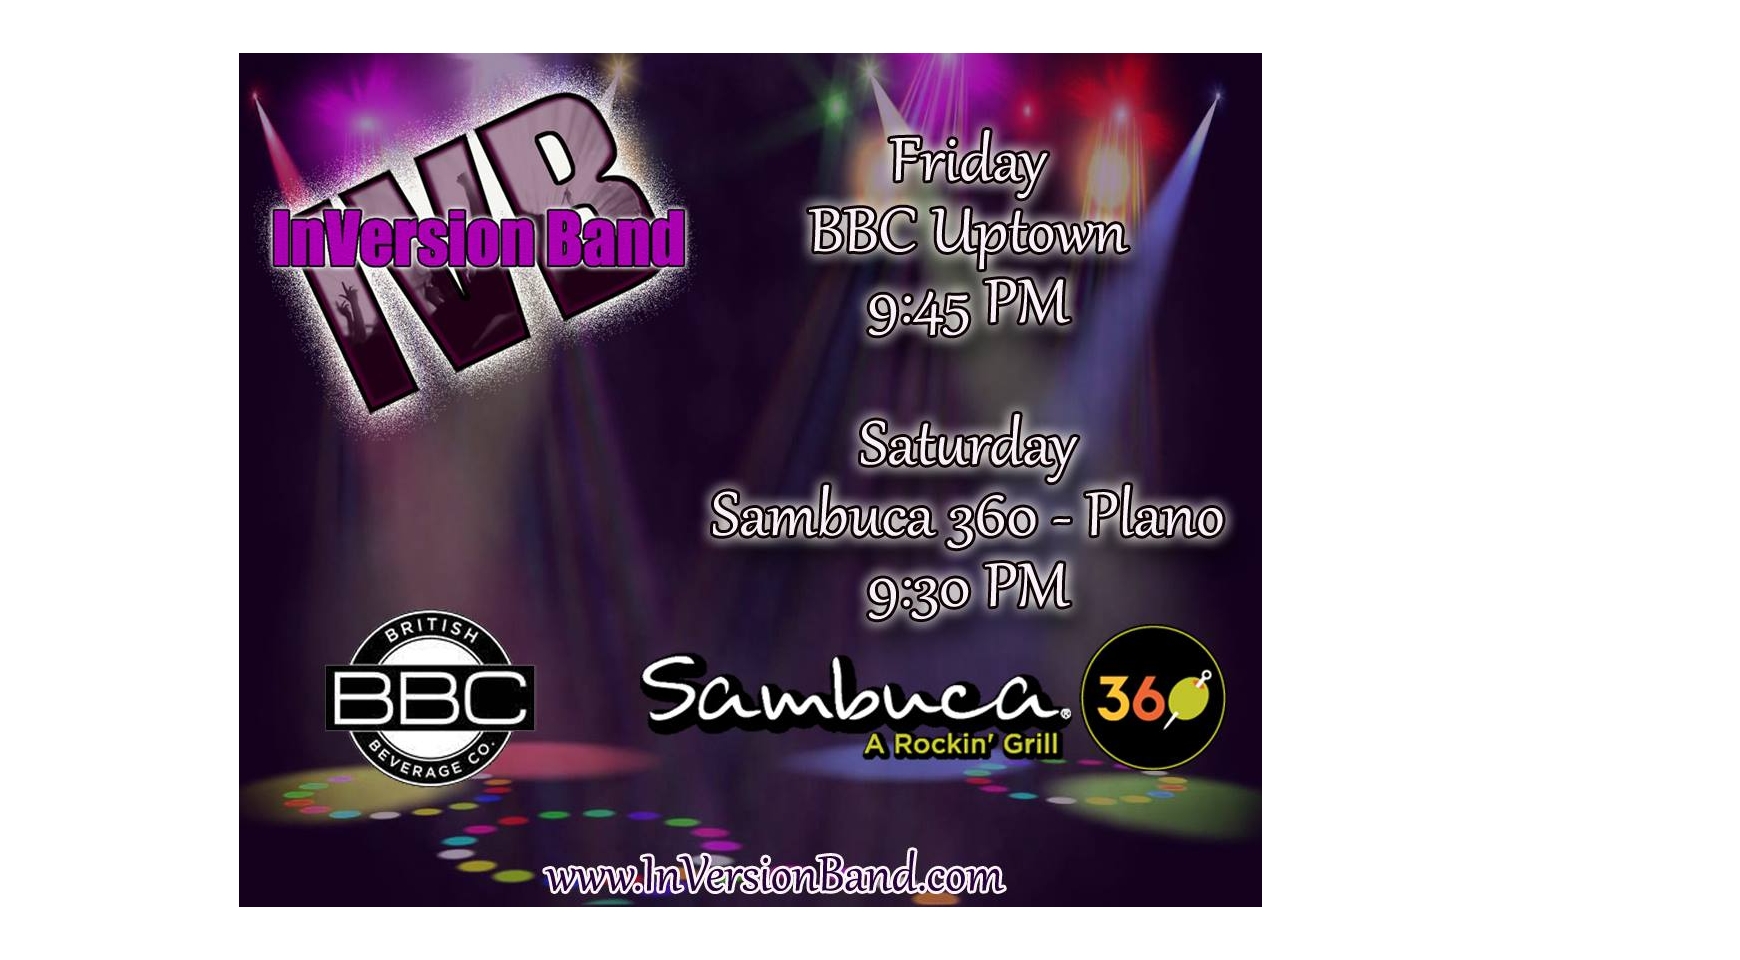 InVersion Band at Sambuca 360 Buy Tickets Online | Plano , Sat , 2017-07-01 | ThisisShow